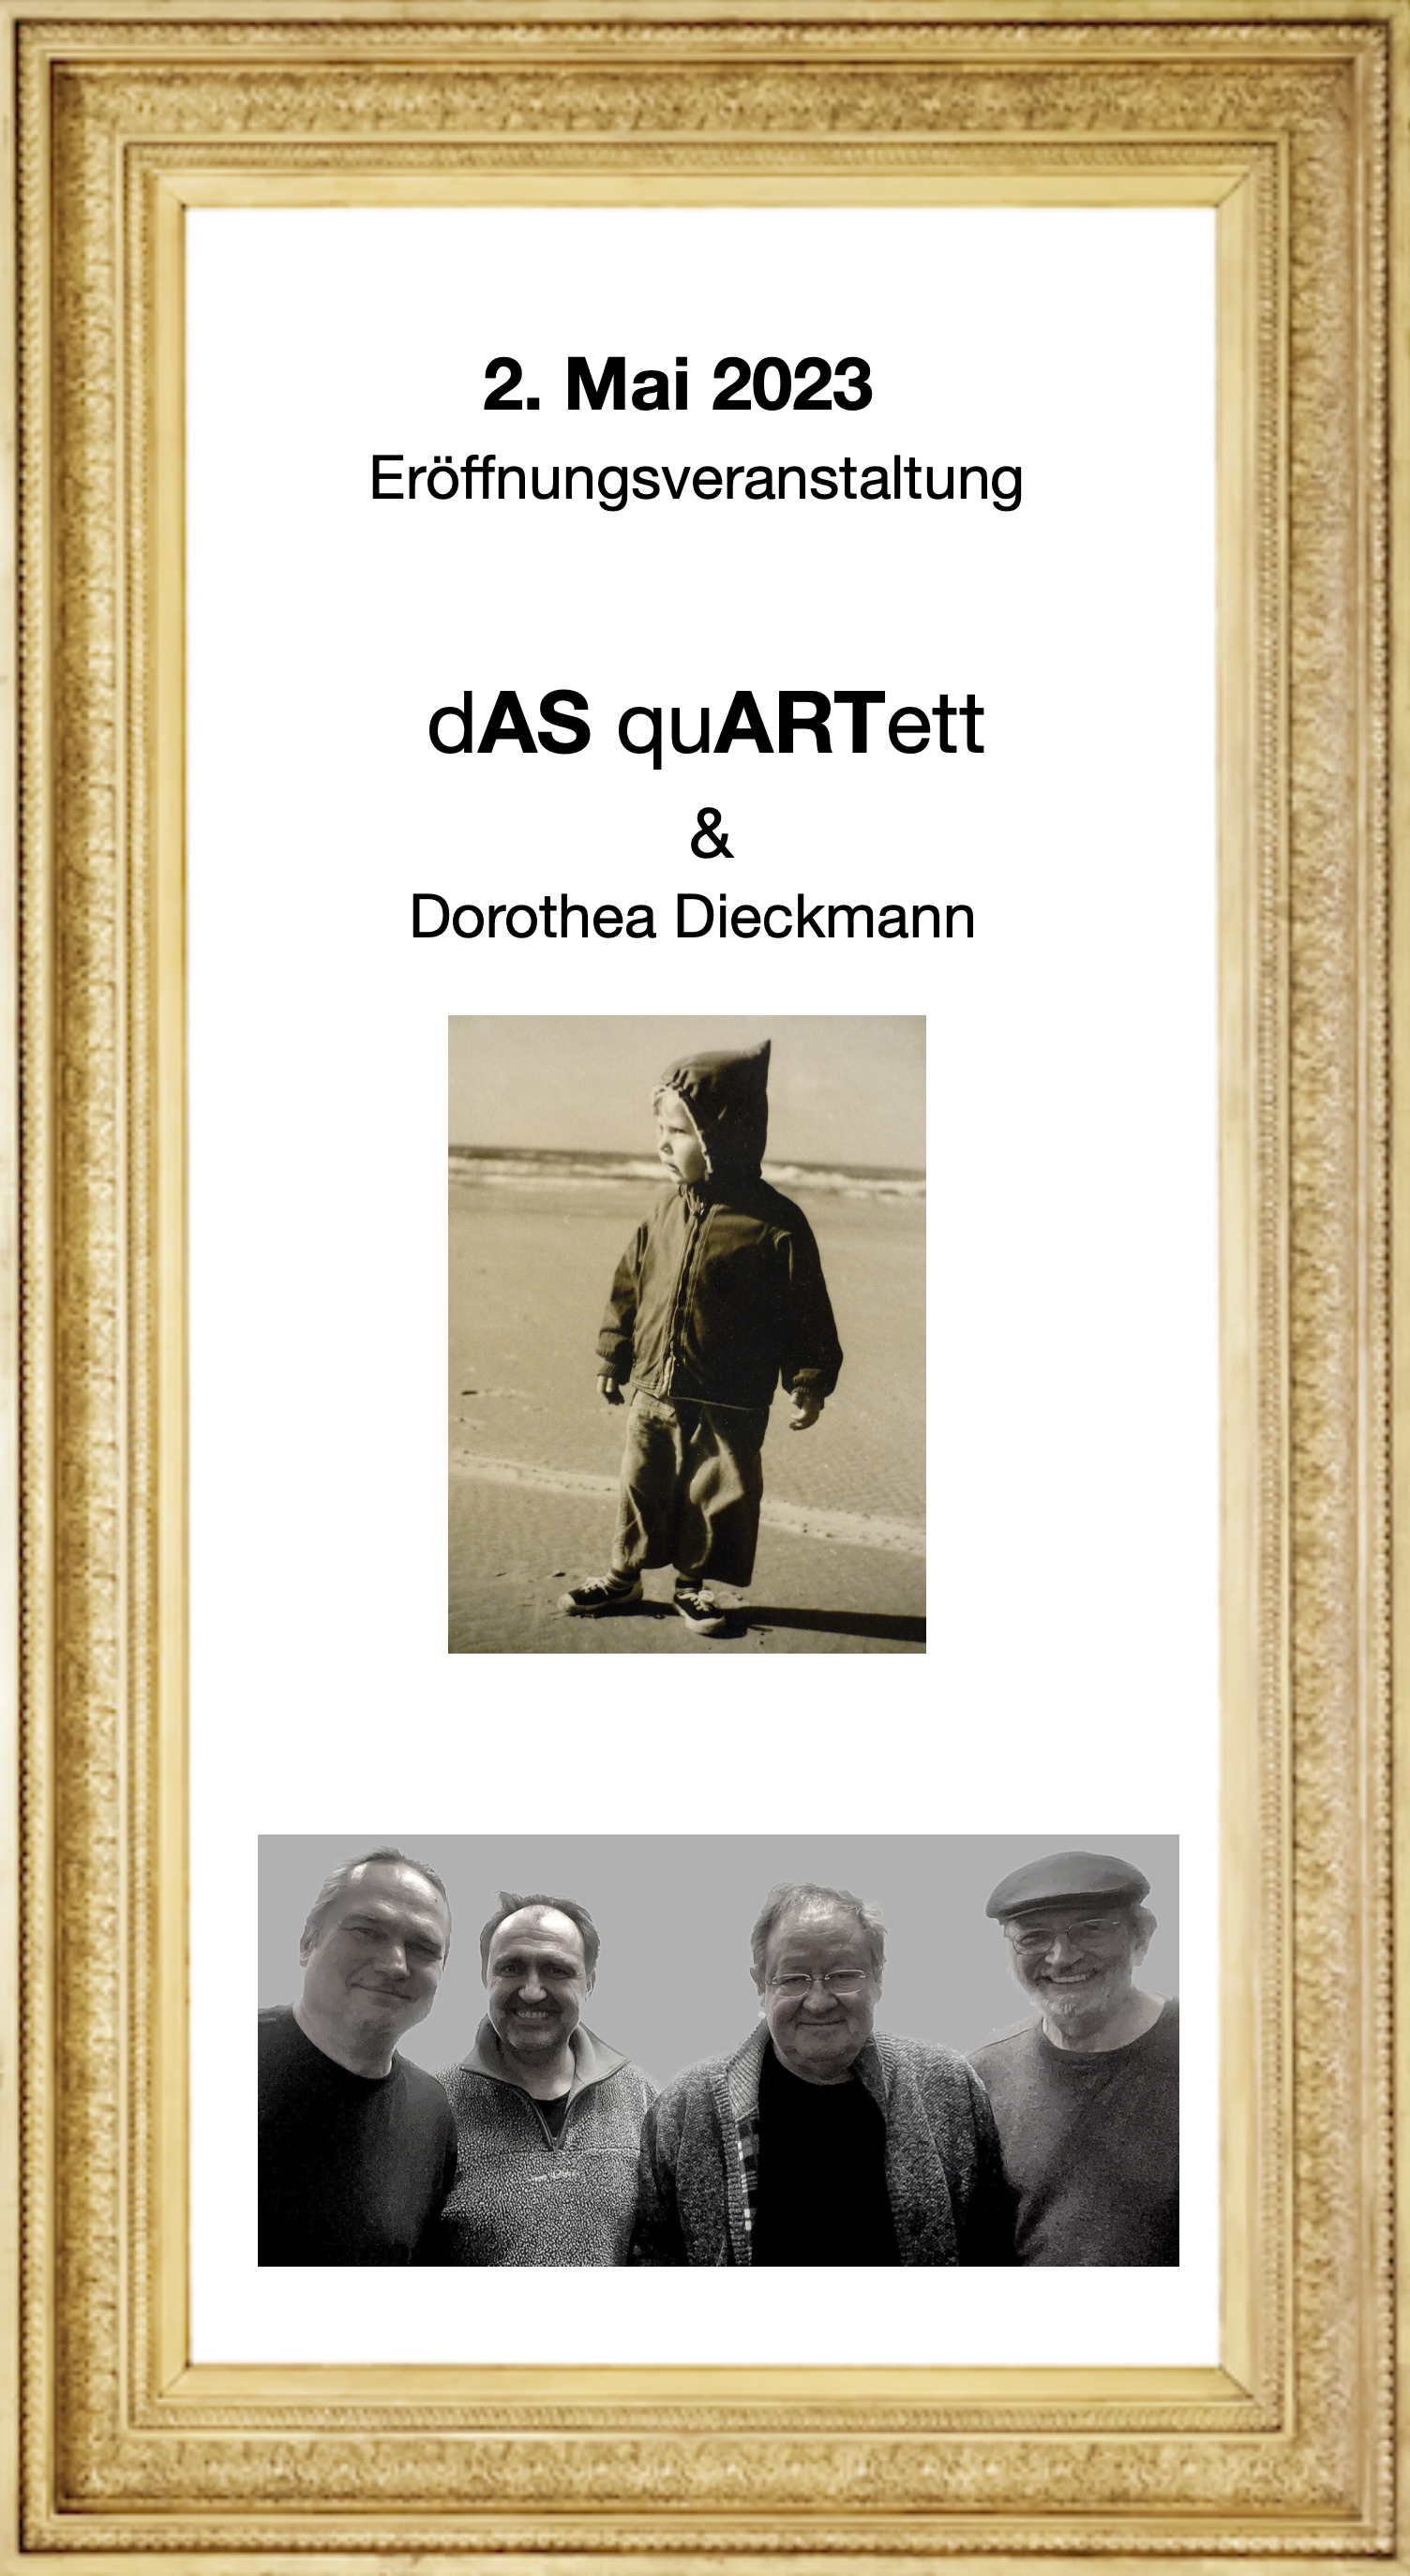 dAS quARTett & Dorothea Dieckmann